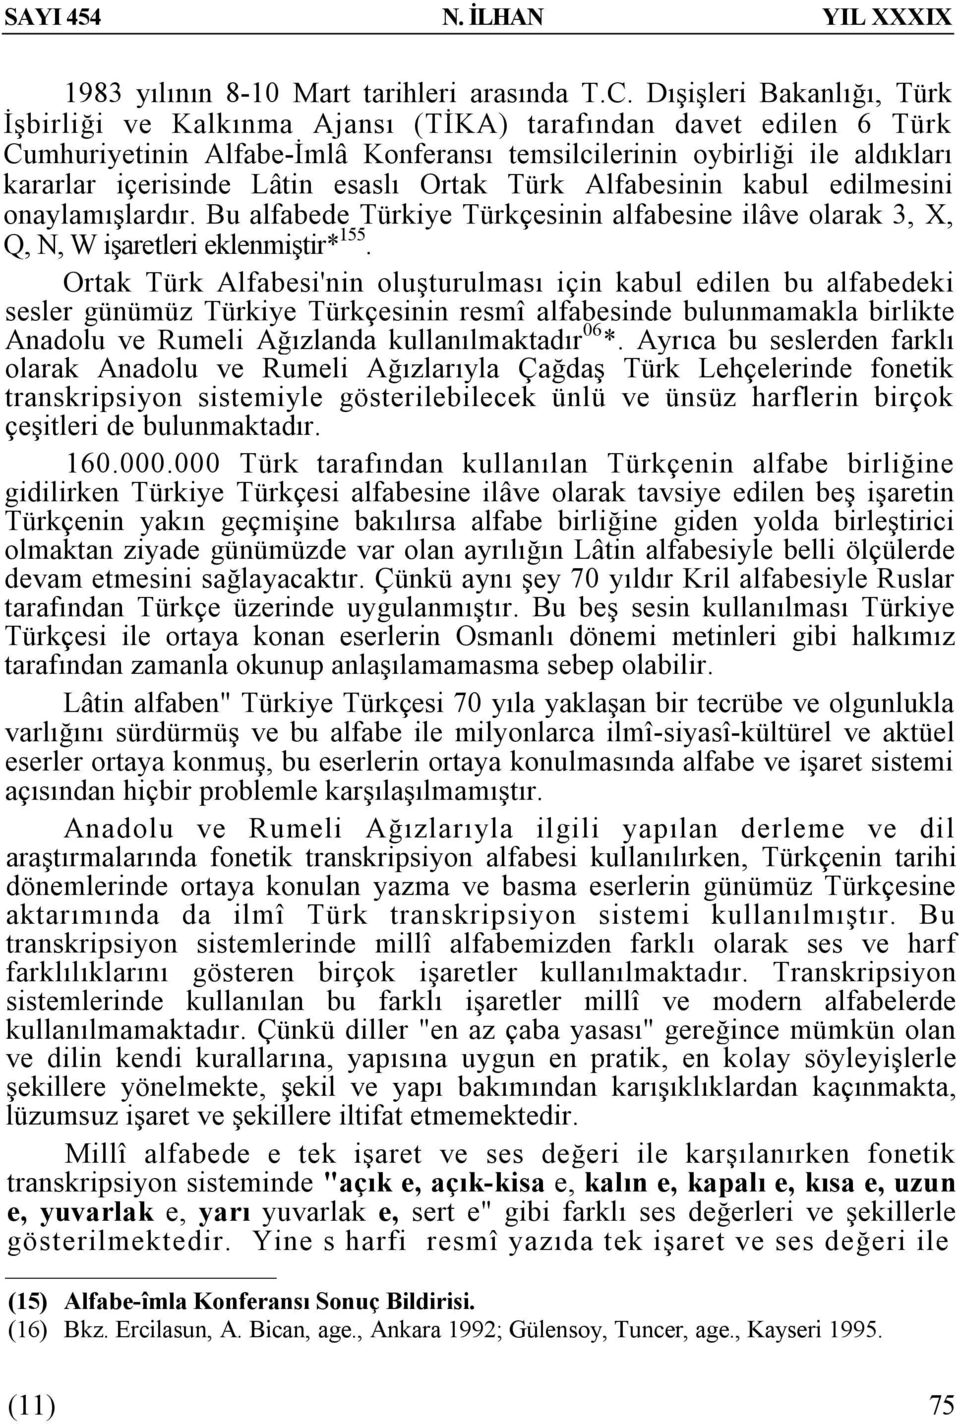 esaslı Ortak Türk Alfabesinin kabul edilmesini onaylamışlardır. Bu alfabede Türkiye Türkçesinin alfabesine ilâve olarak 3, X, Q, N, W işaretleri eklenmiştir* 155.